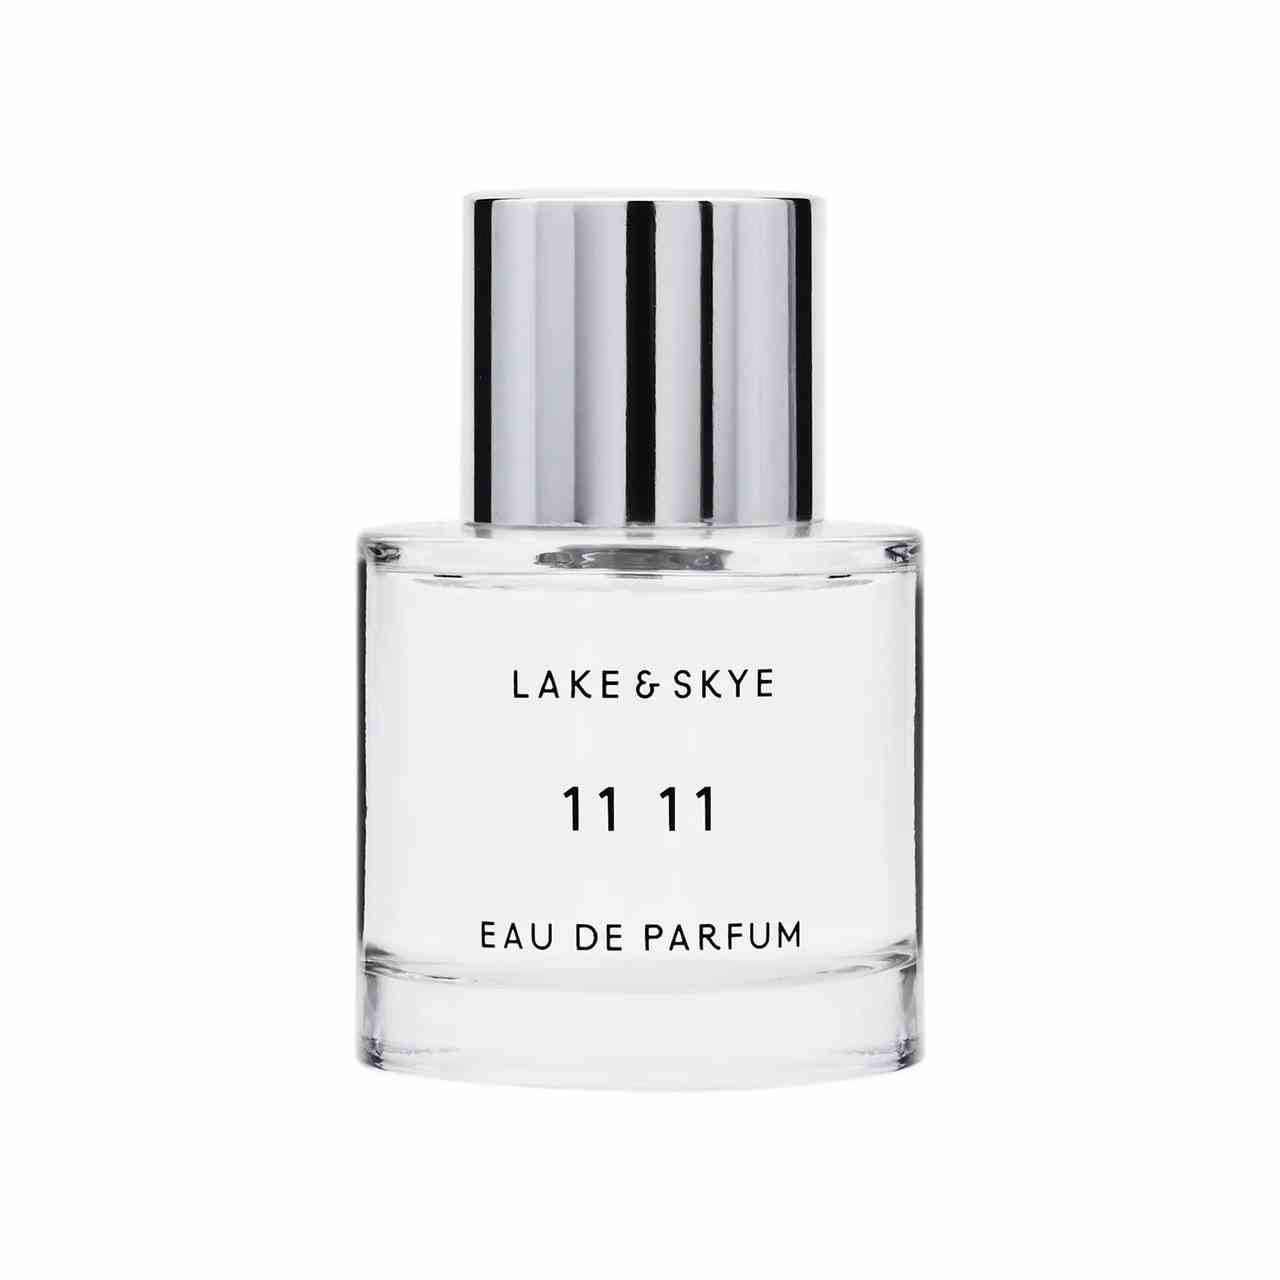 Lake & Skye 11 11 Eau de Parfum gedrungene Zylinderflasche Parfüm mit silberner Kappe auf weißem Hintergrund